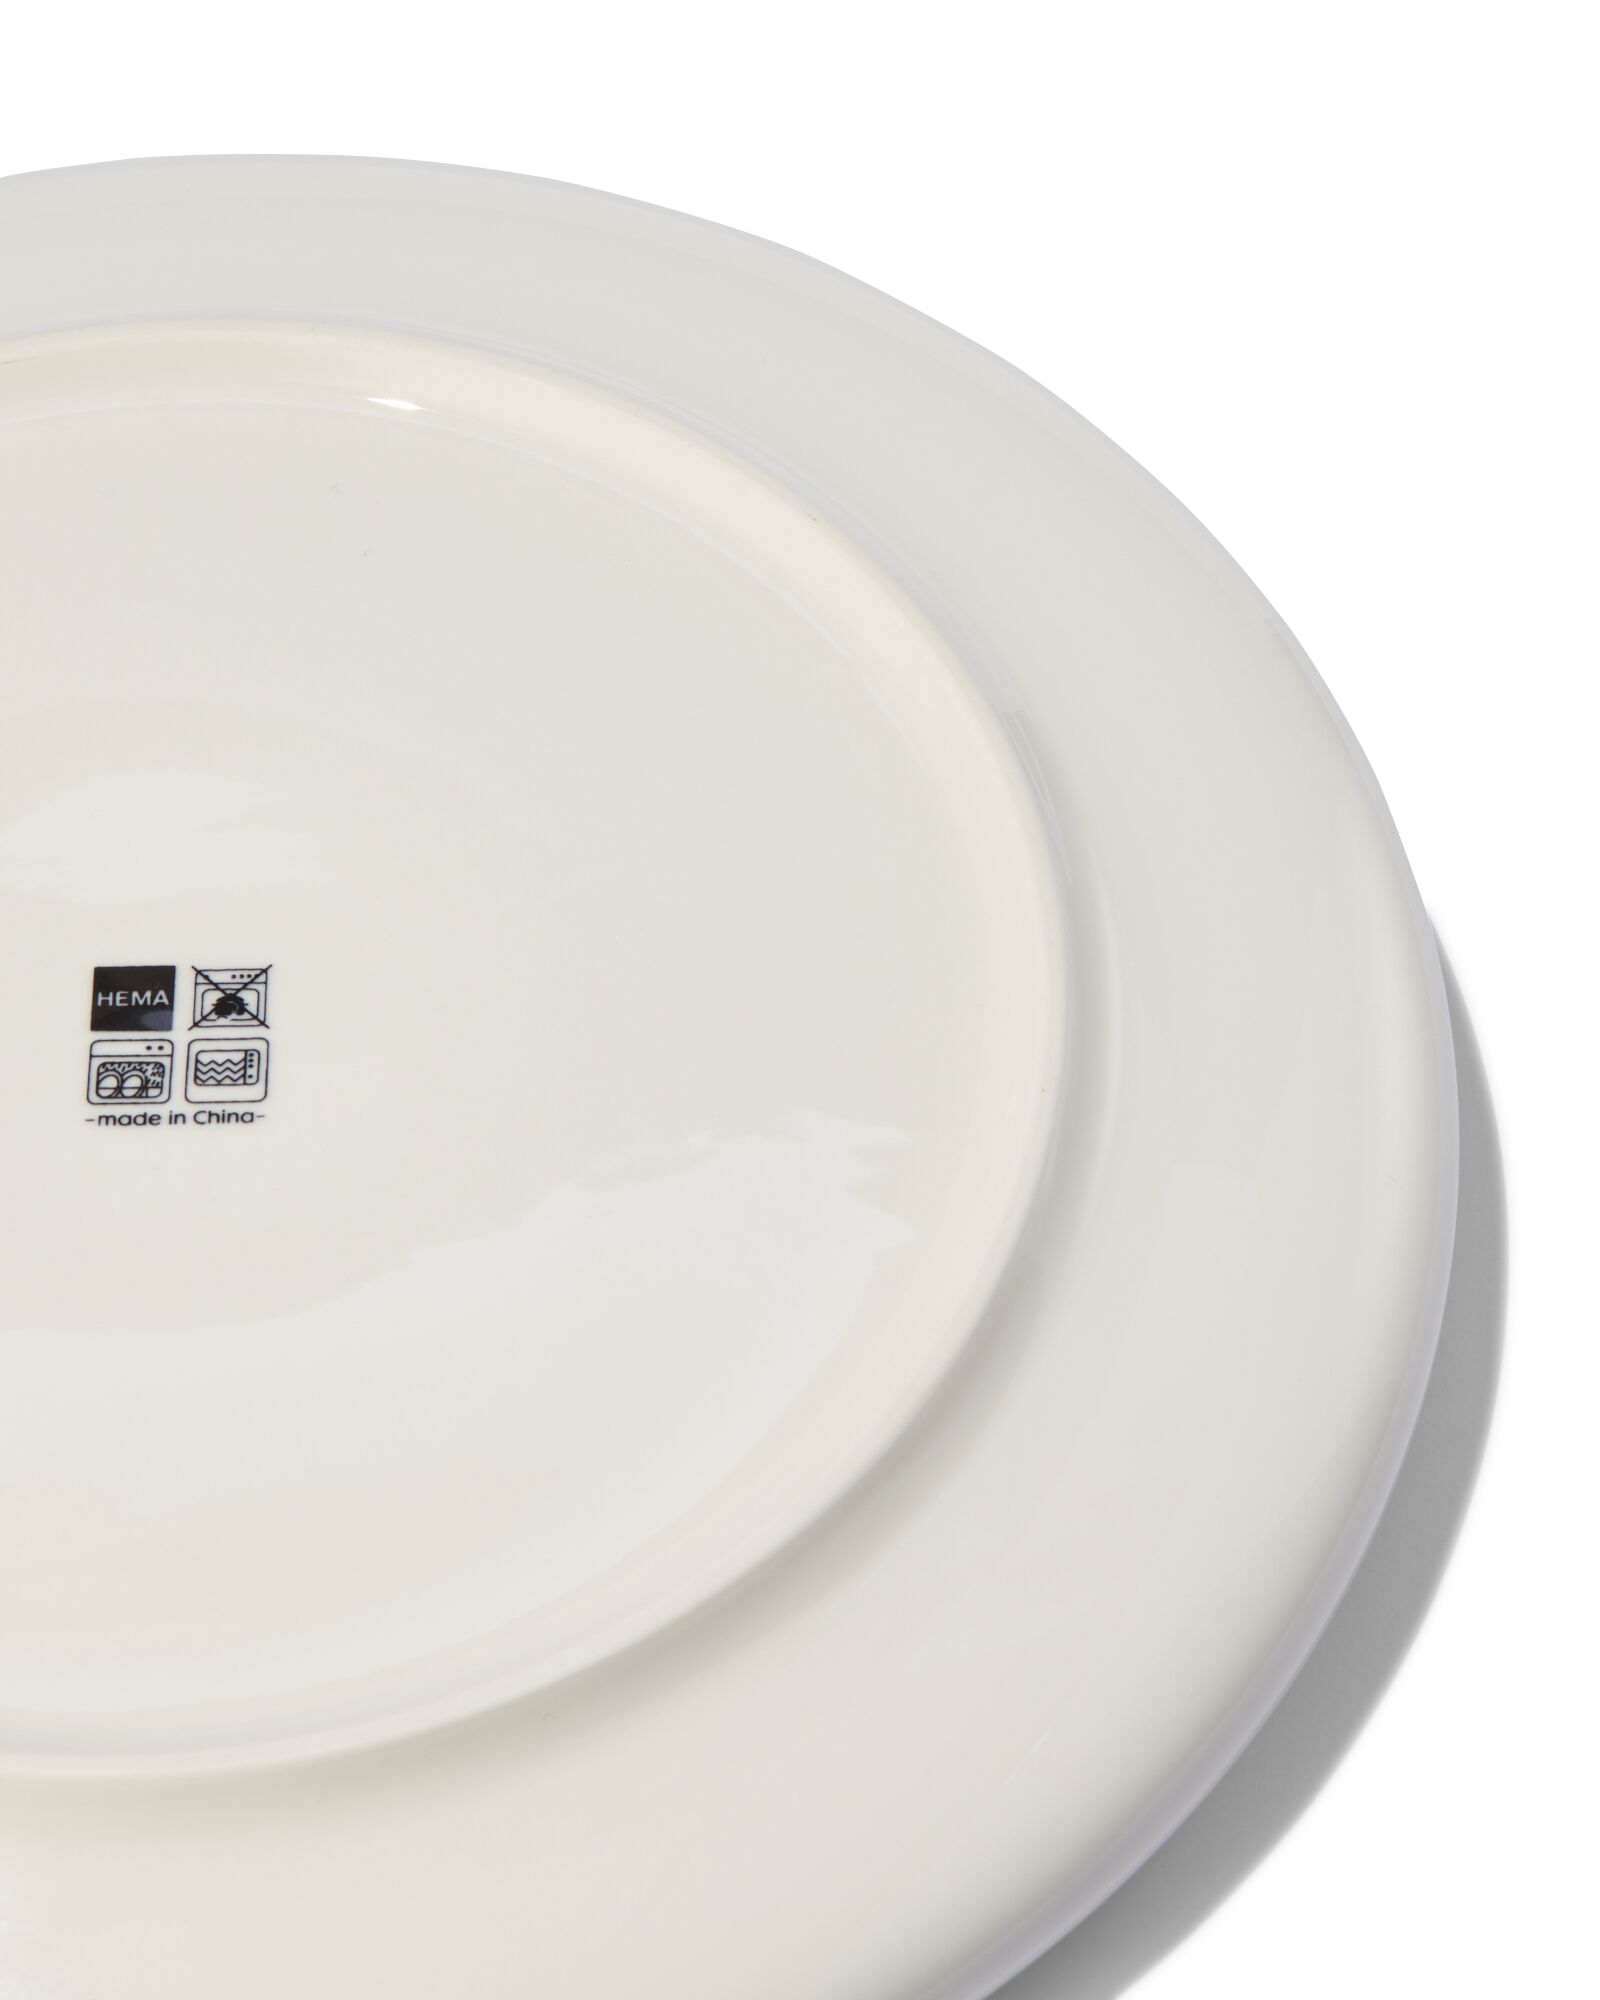 assiette plate - 26 cm - Rome - new bone - blanche - 9602042 - HEMA